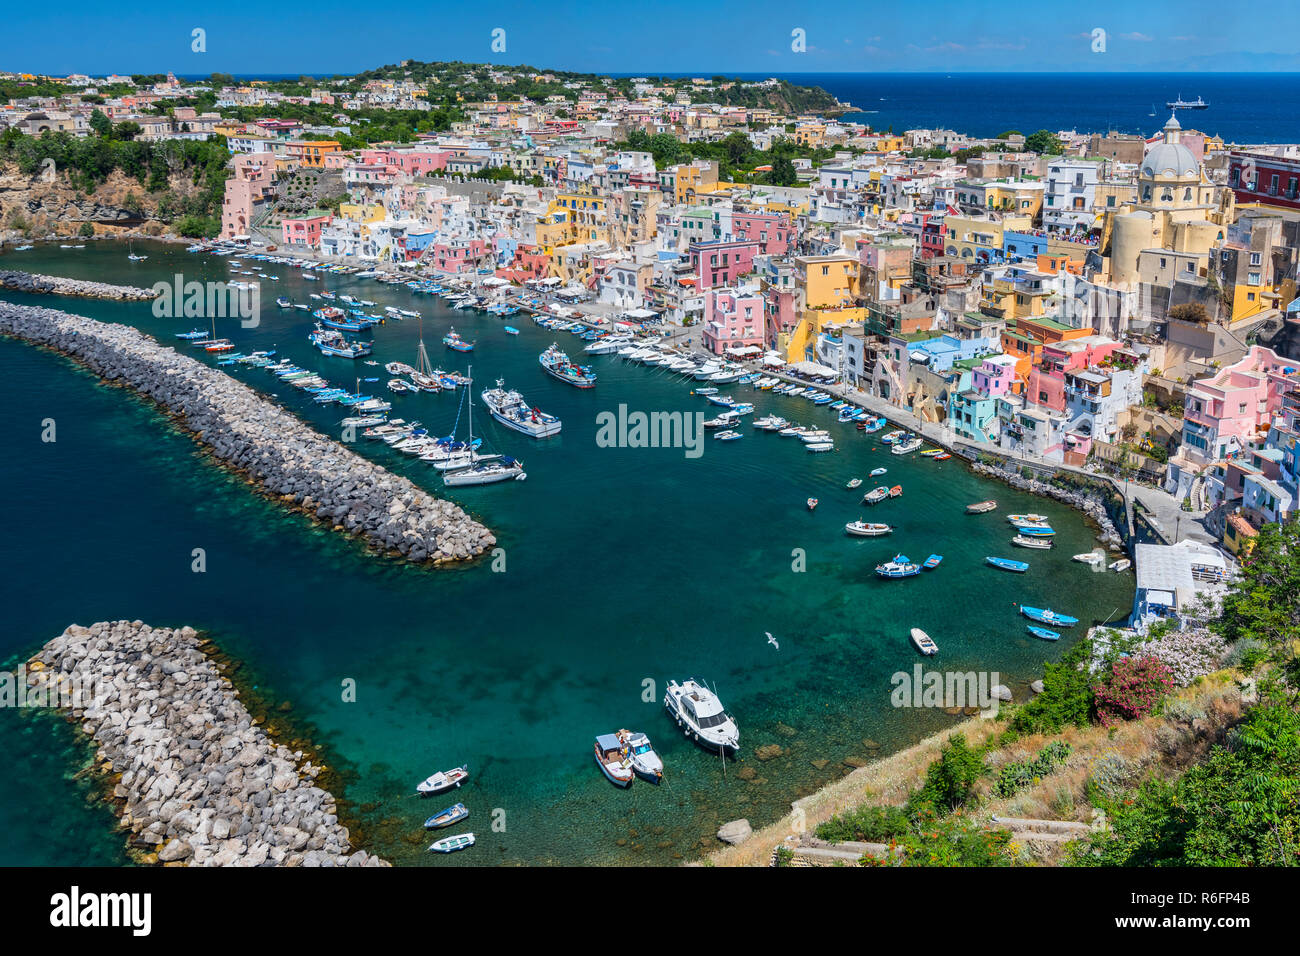 Marina della Corricella, villaggio di pescatori sull'Isola di Procida vicino a Napoli, Italia Foto Stock